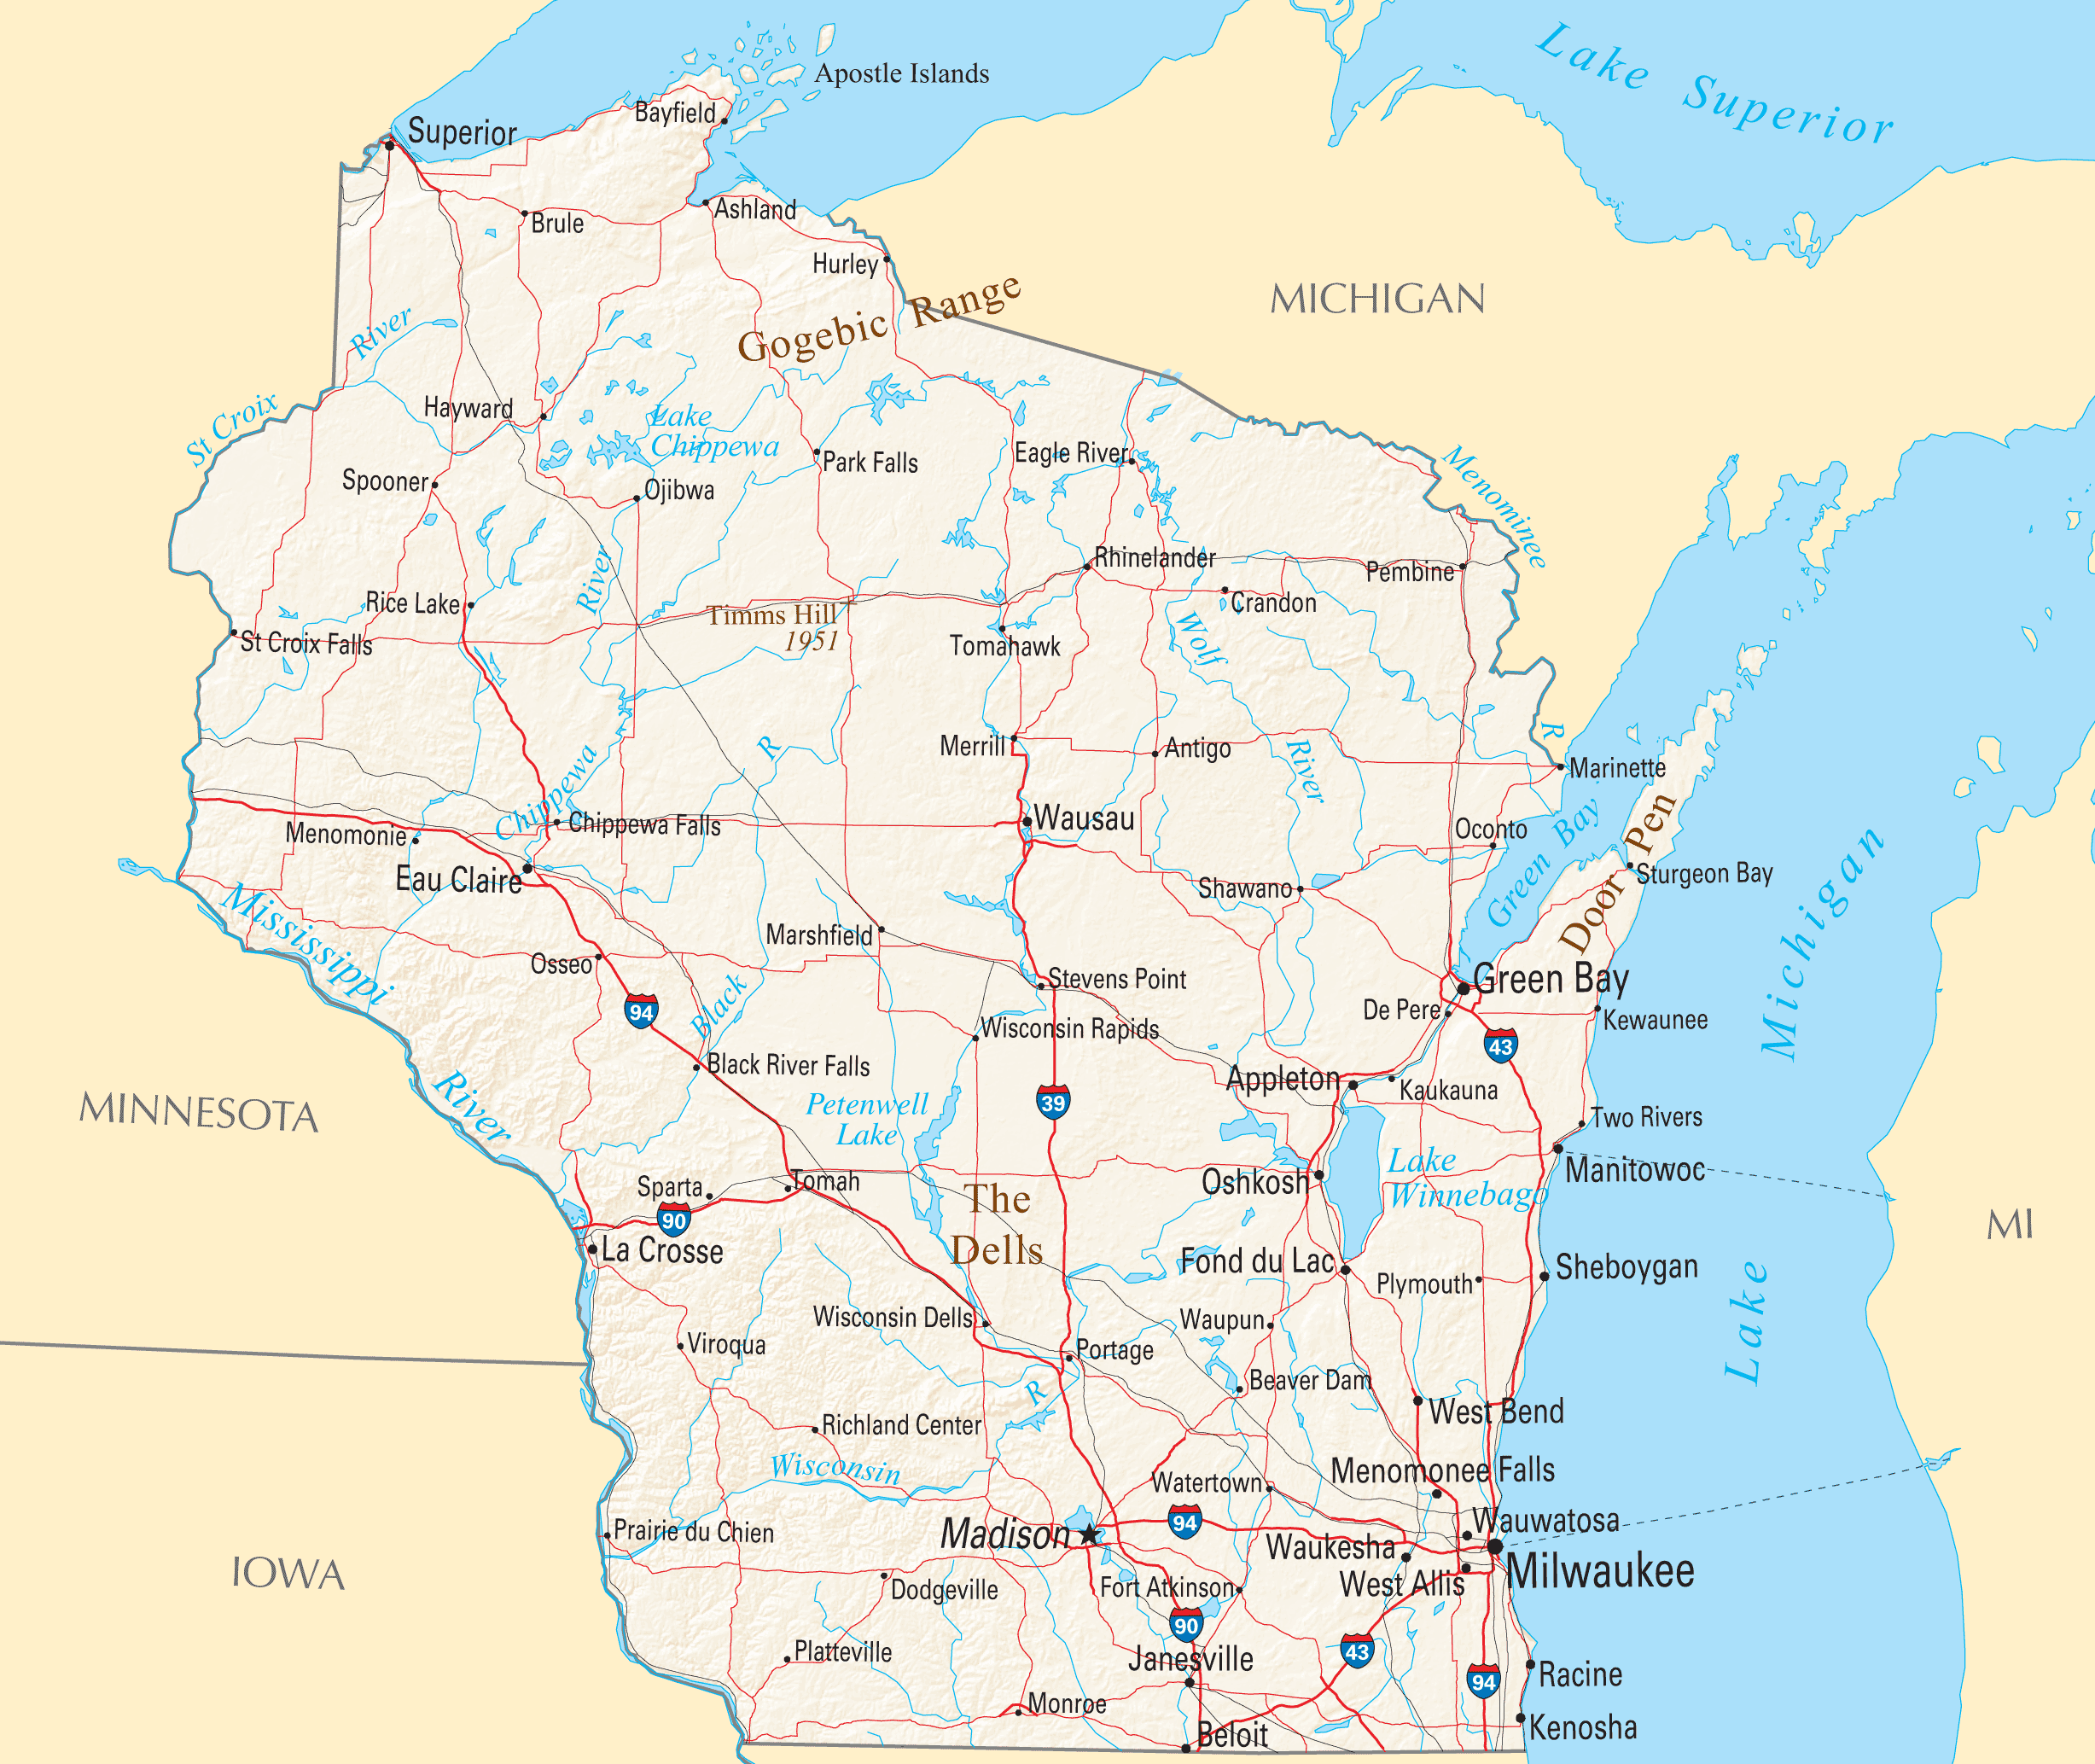 Wisconsin Map Fotolip